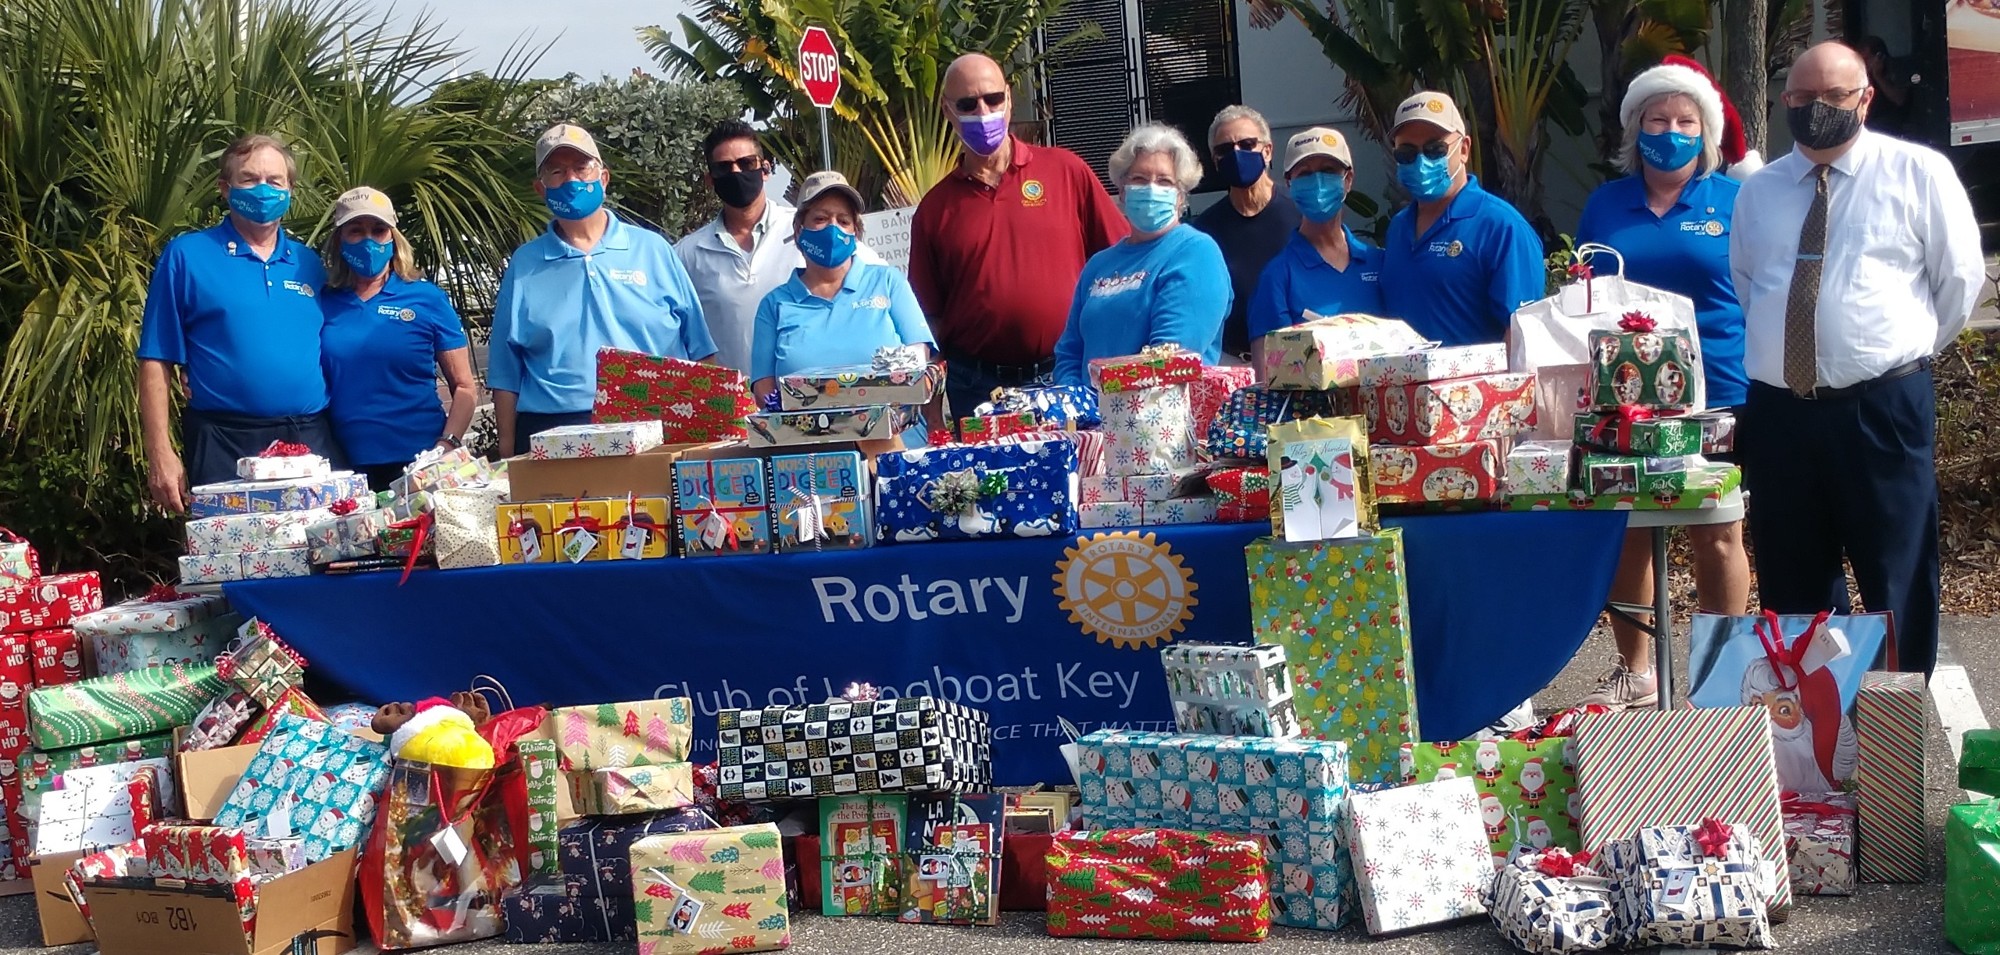 Rotary's donation. Photo courtesy of Carol Erker.